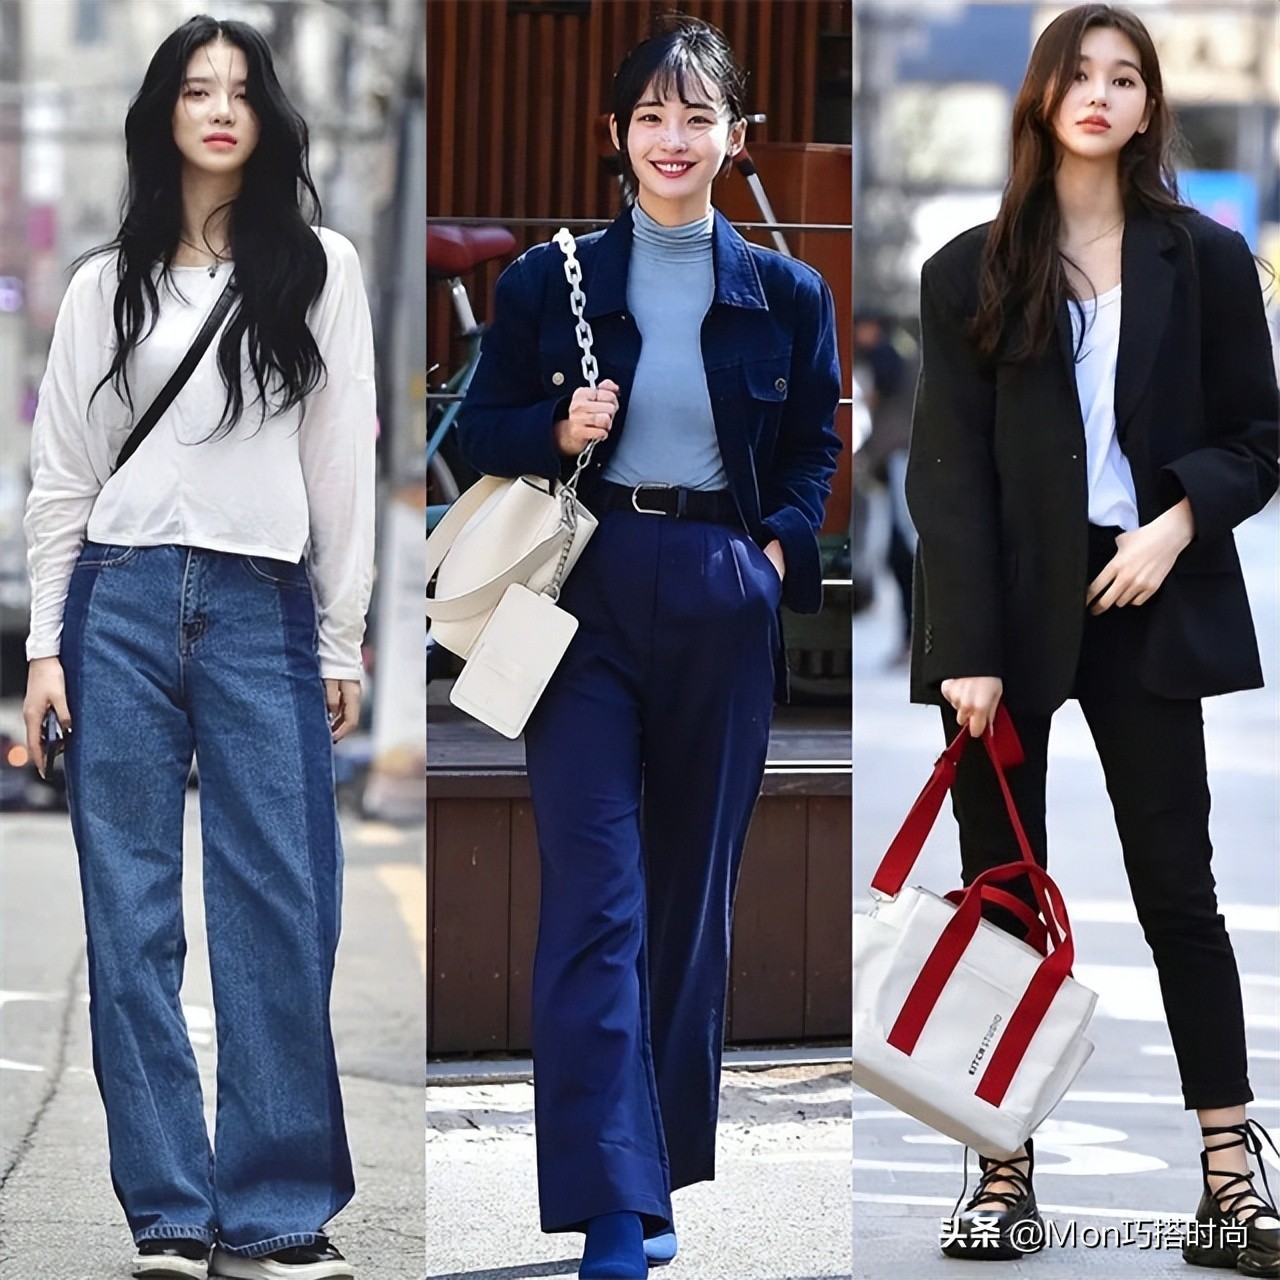 裤子究竟是穿“紧”还是穿“宽”？让韩国女生的街拍告诉你答案